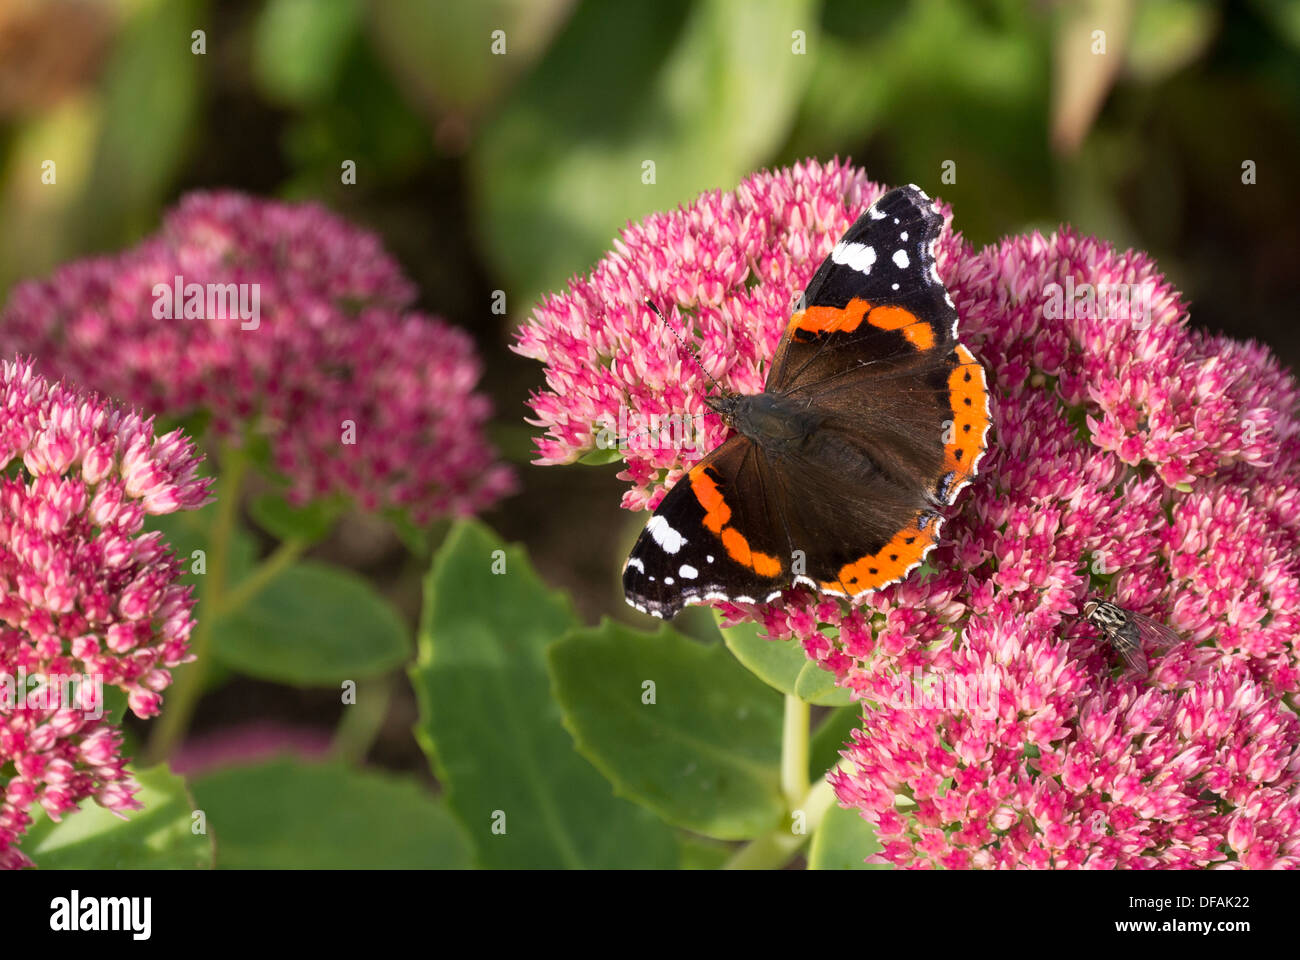 British garden Red Admiral butterfly on a sedum bush. Stock Photo